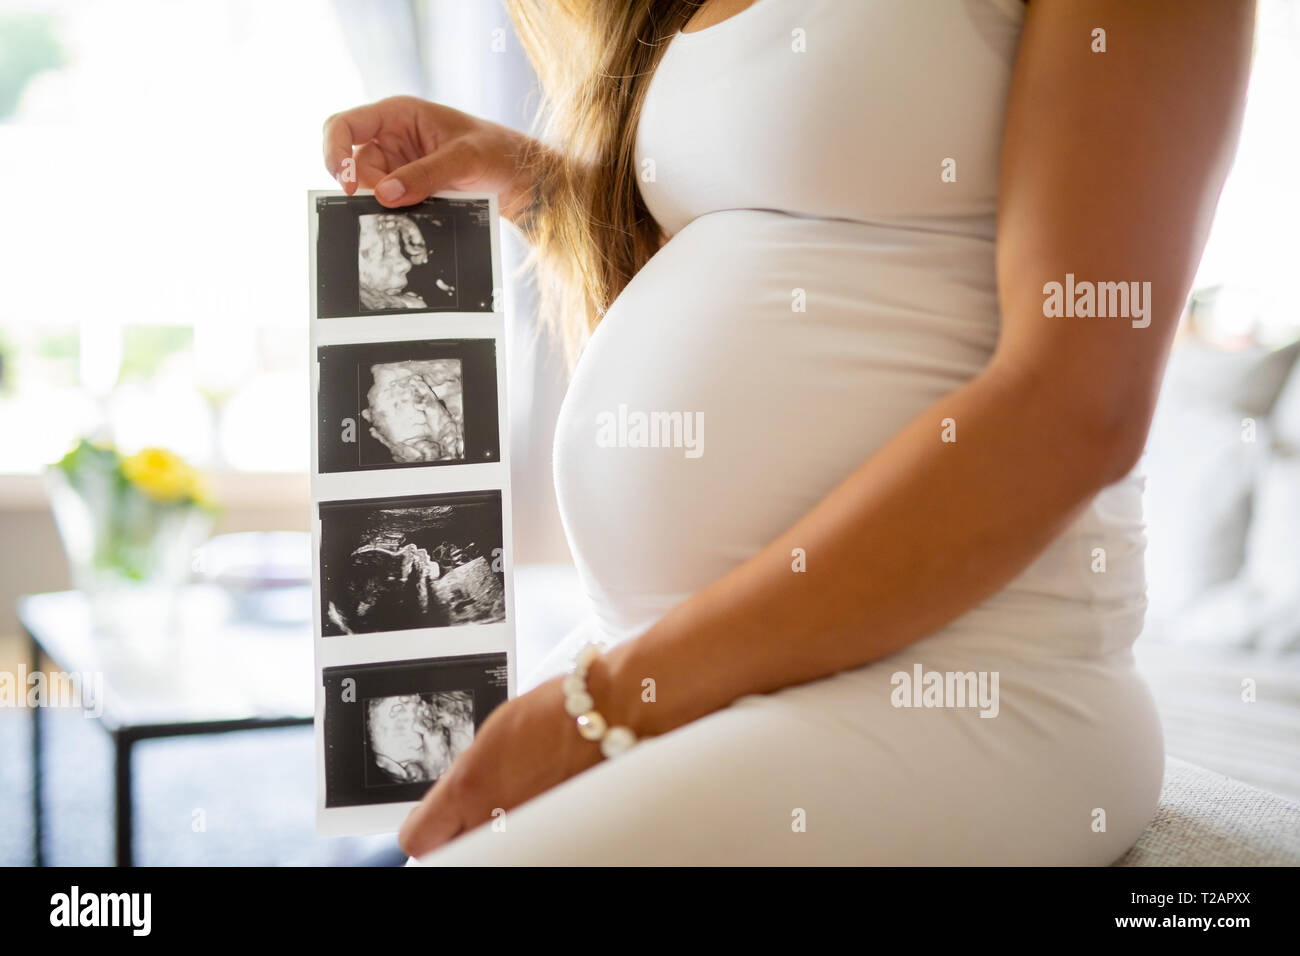 In der Nähe der schwangeren Frau hält Ultraschall Fotos in Ihrem Magen Stockfoto